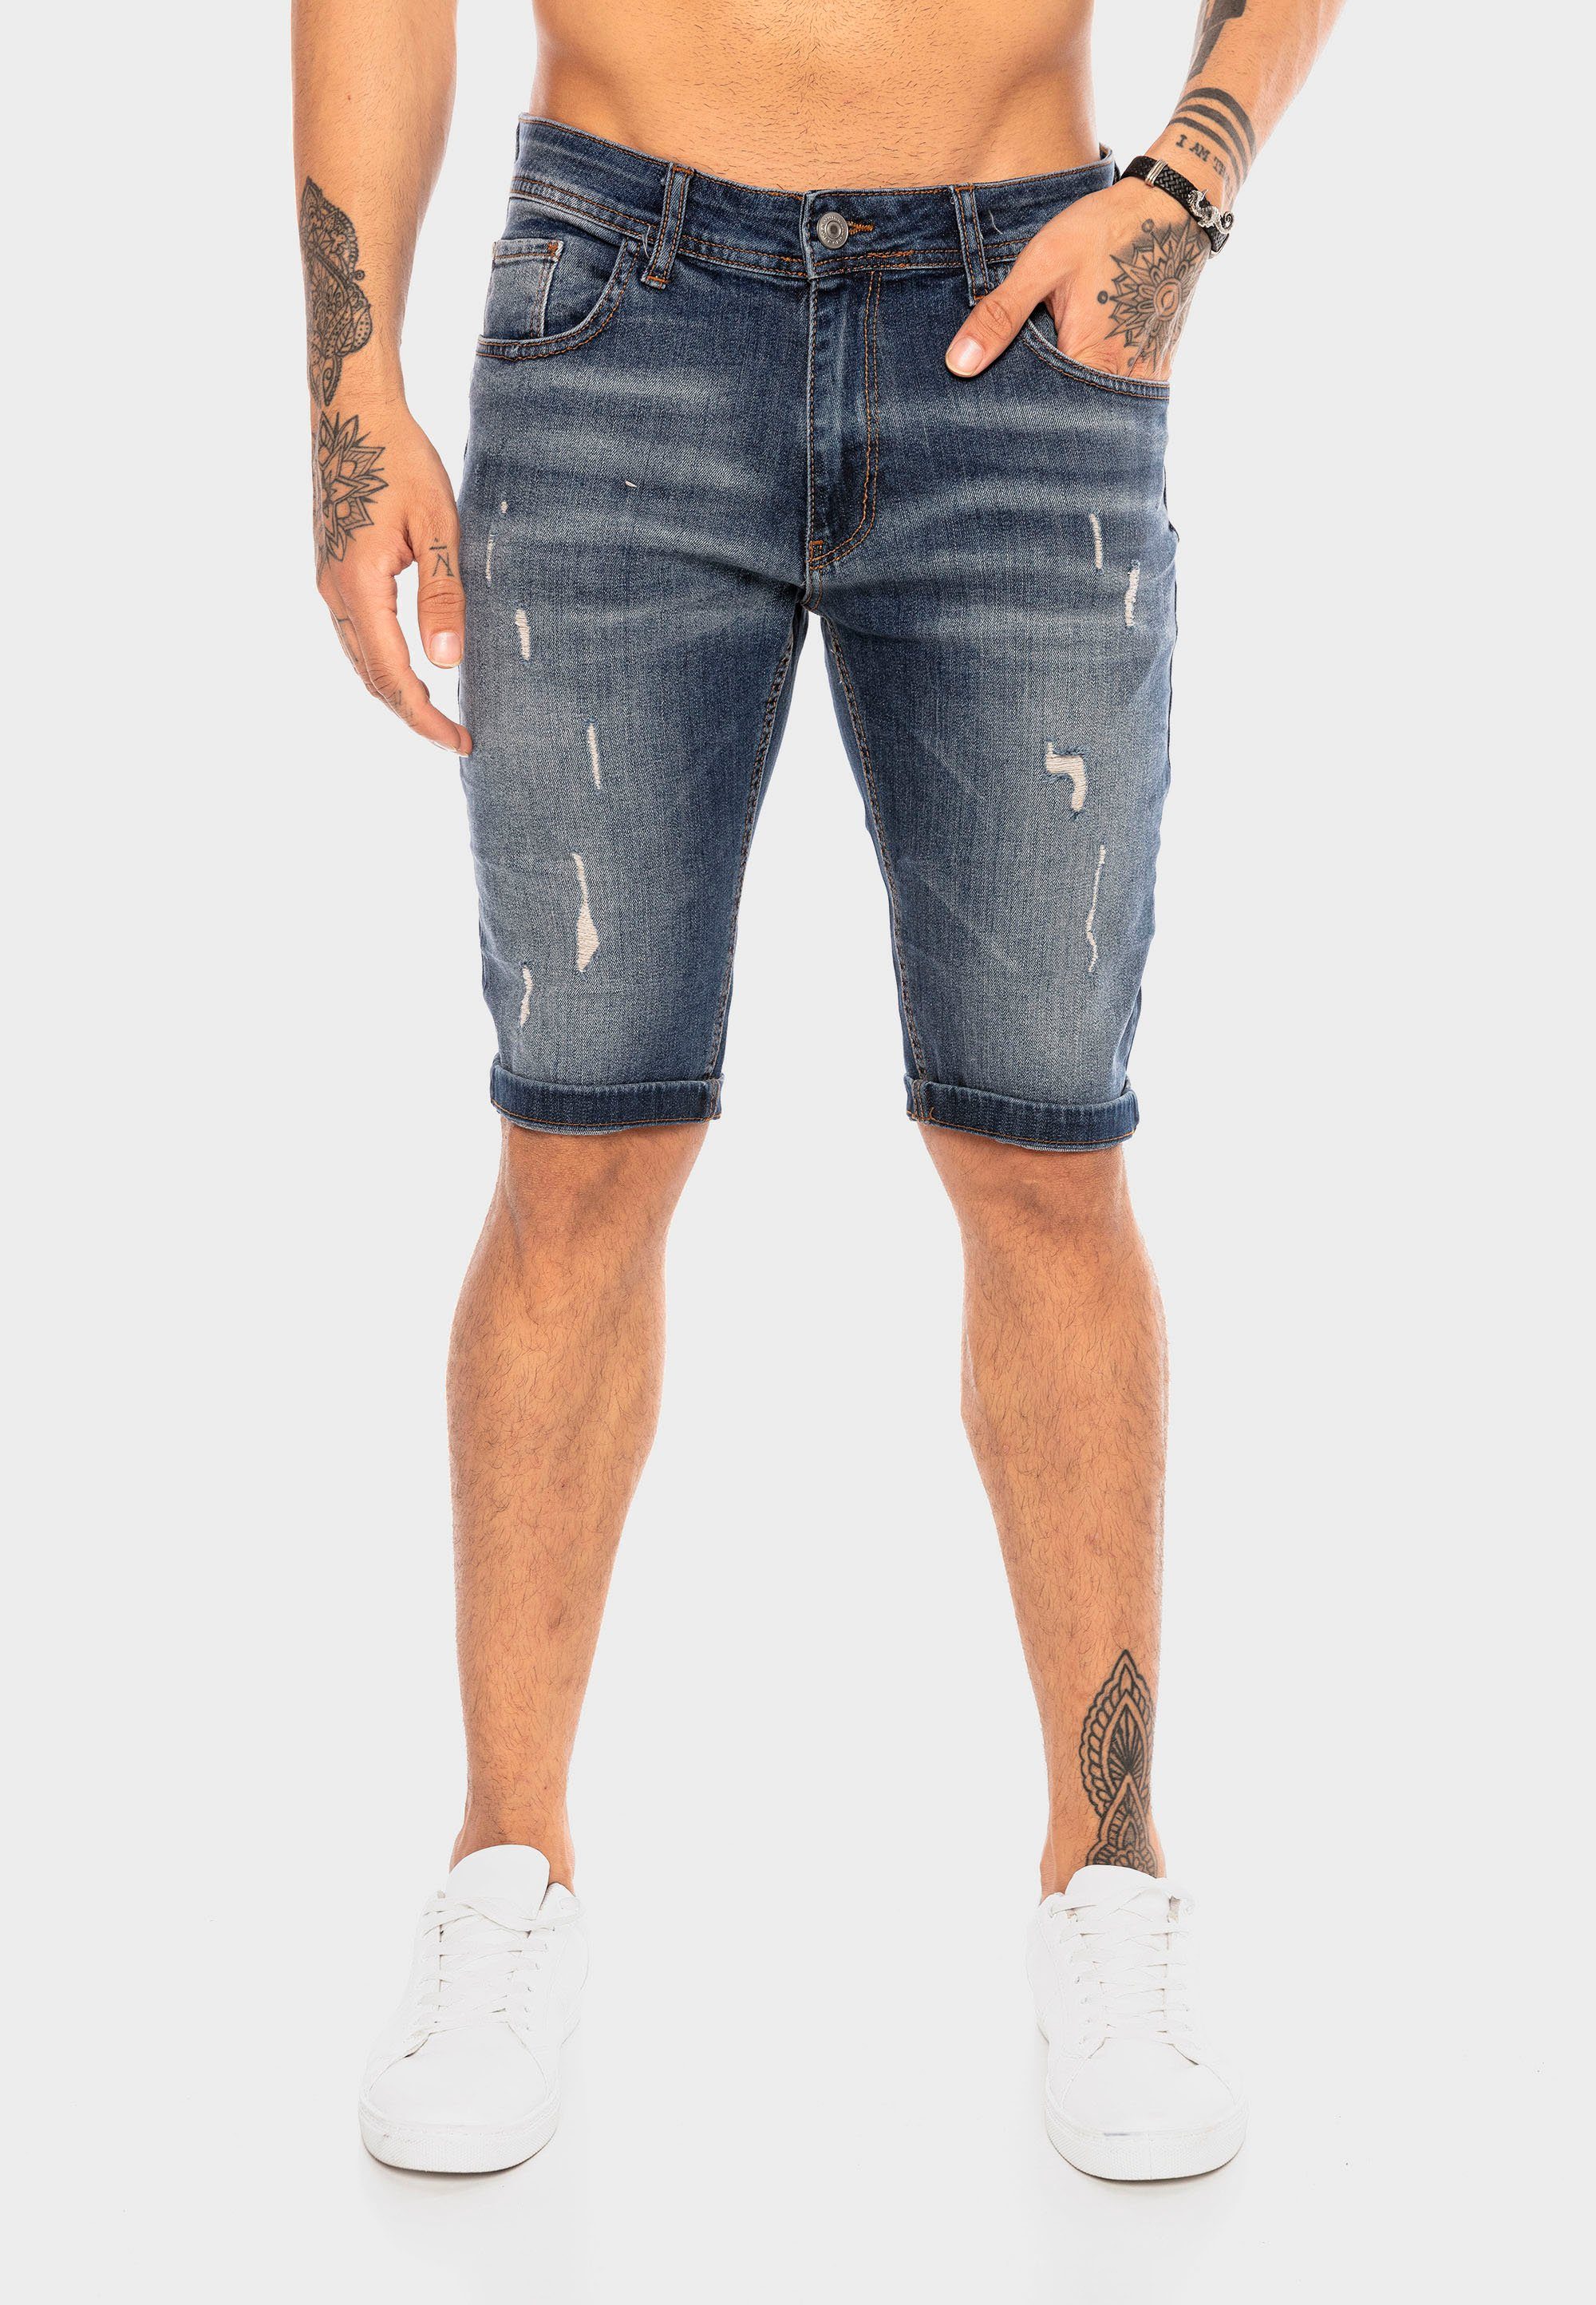 RedBridge Destroyed-Elementen dunkelblau trendigen mit Shorts